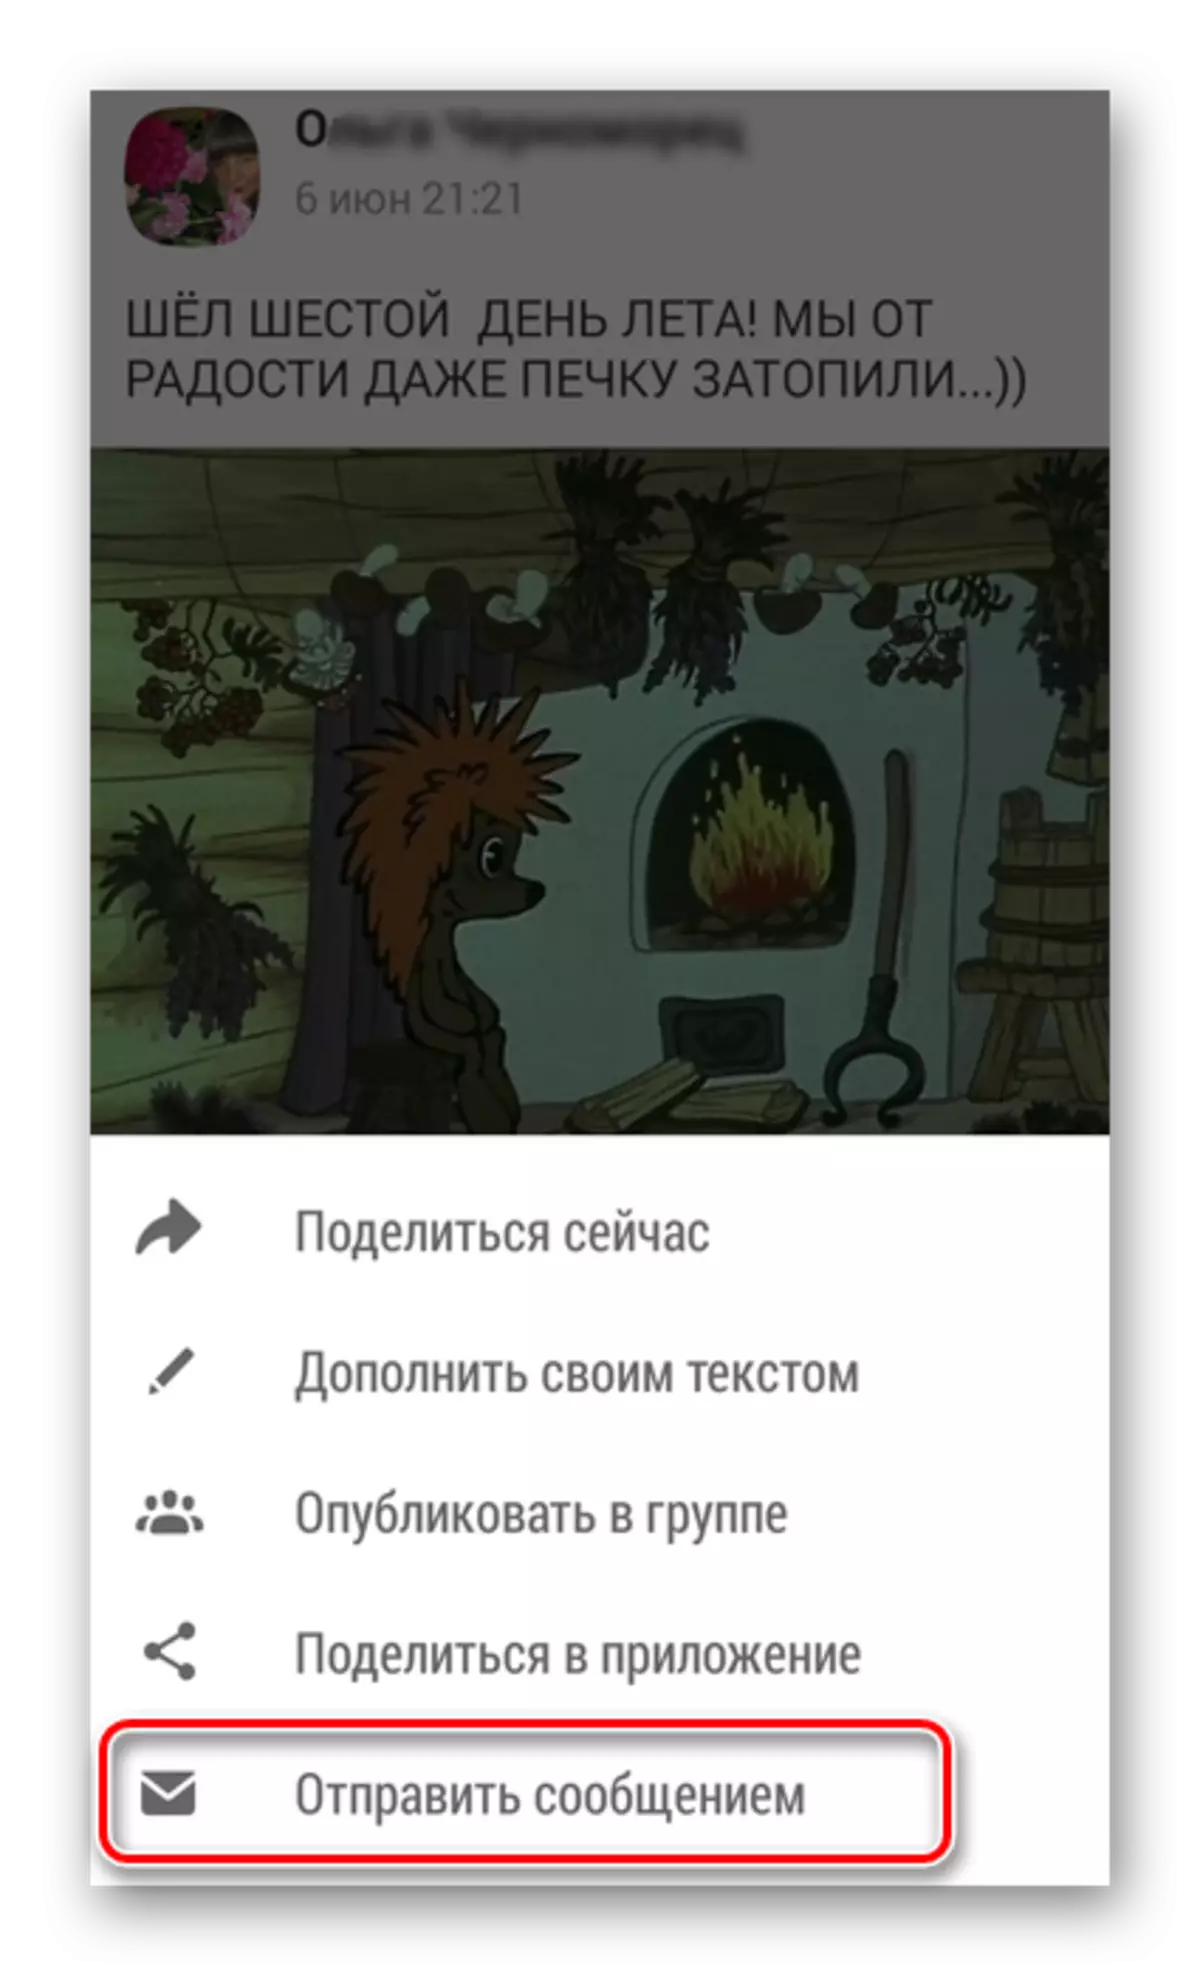 Invia un messaggio nell'appendice odnoklassniki